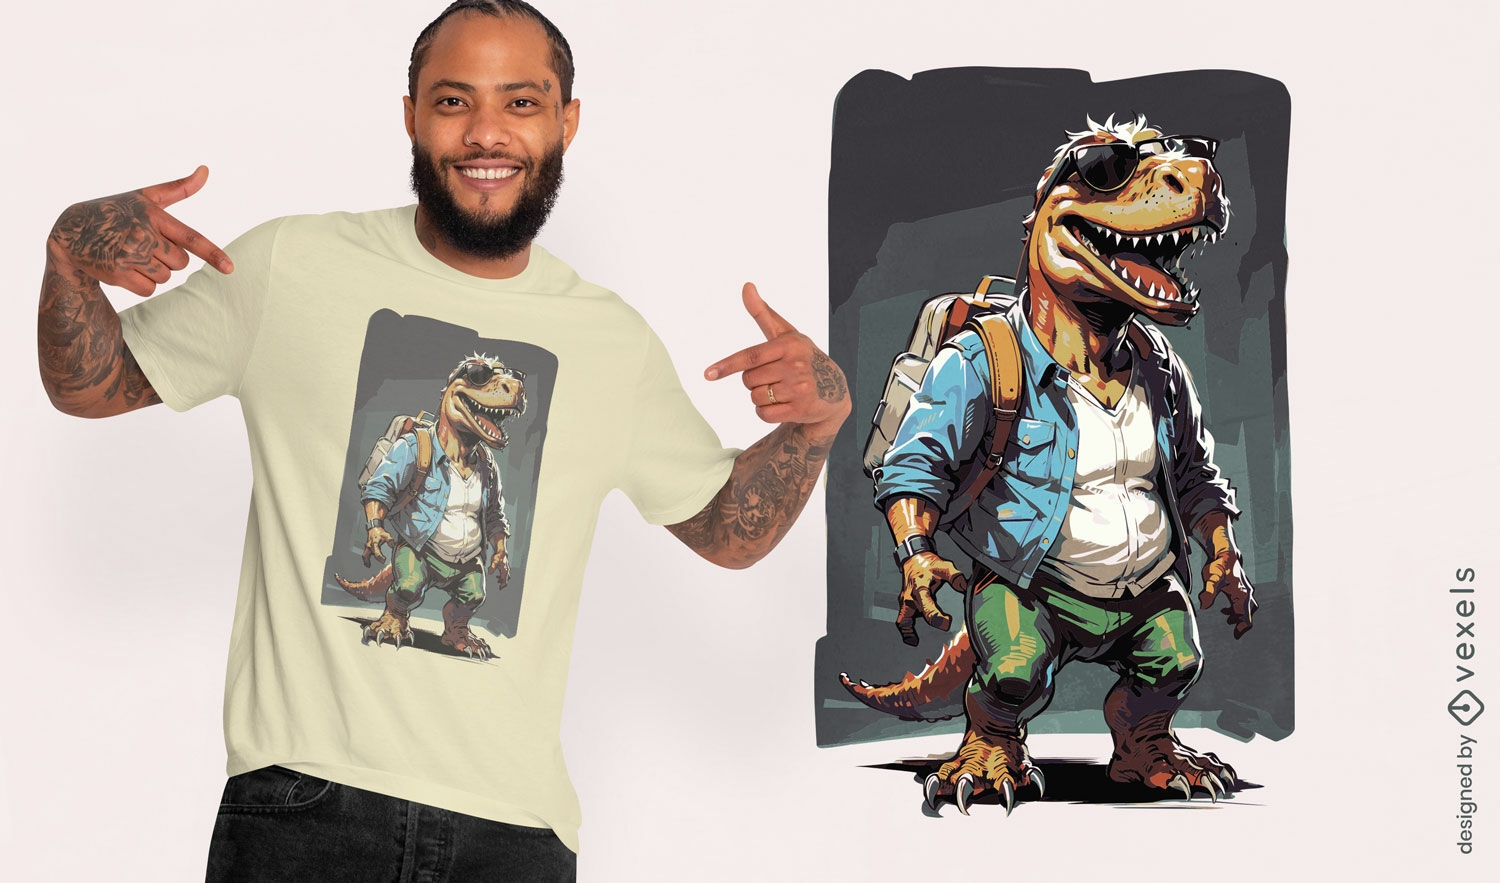 Dise?o de camiseta de dinosaurio aventurero.